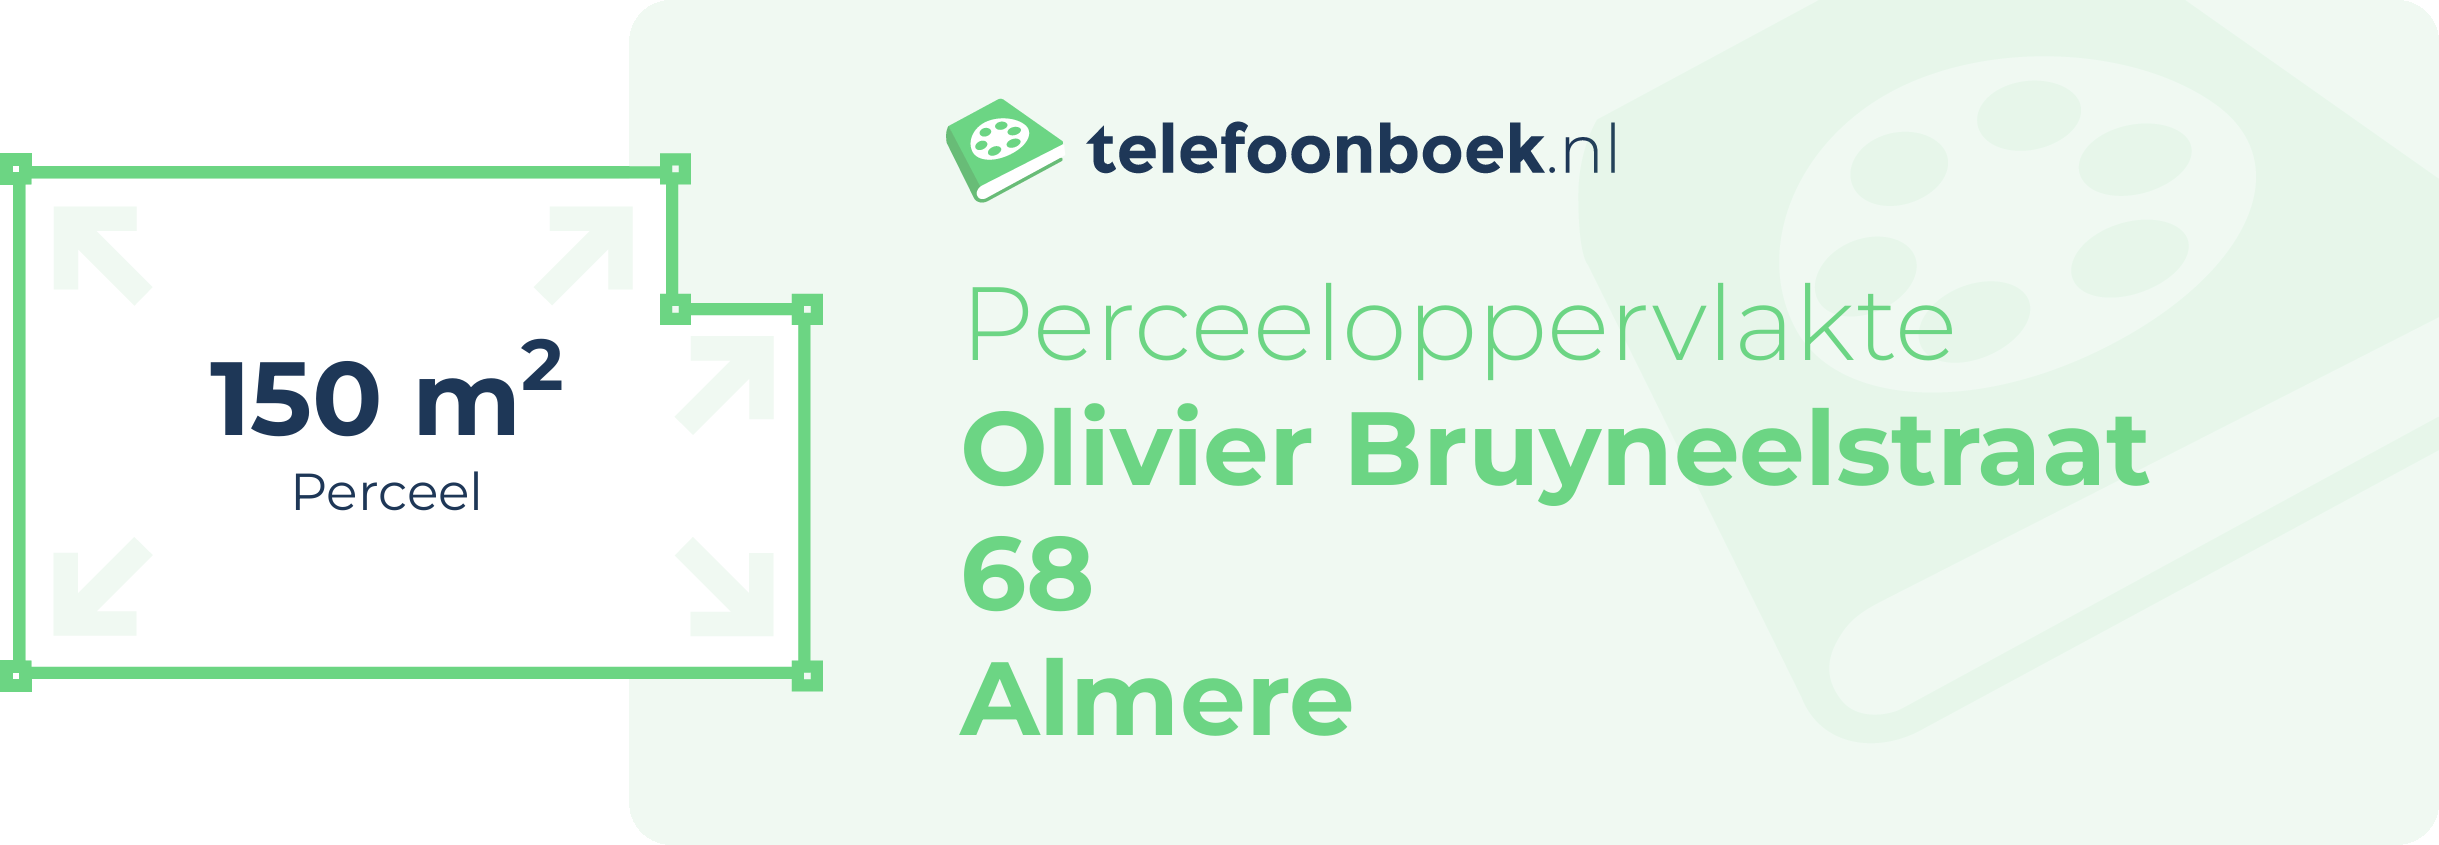 Perceeloppervlakte Olivier Bruyneelstraat 68 Almere